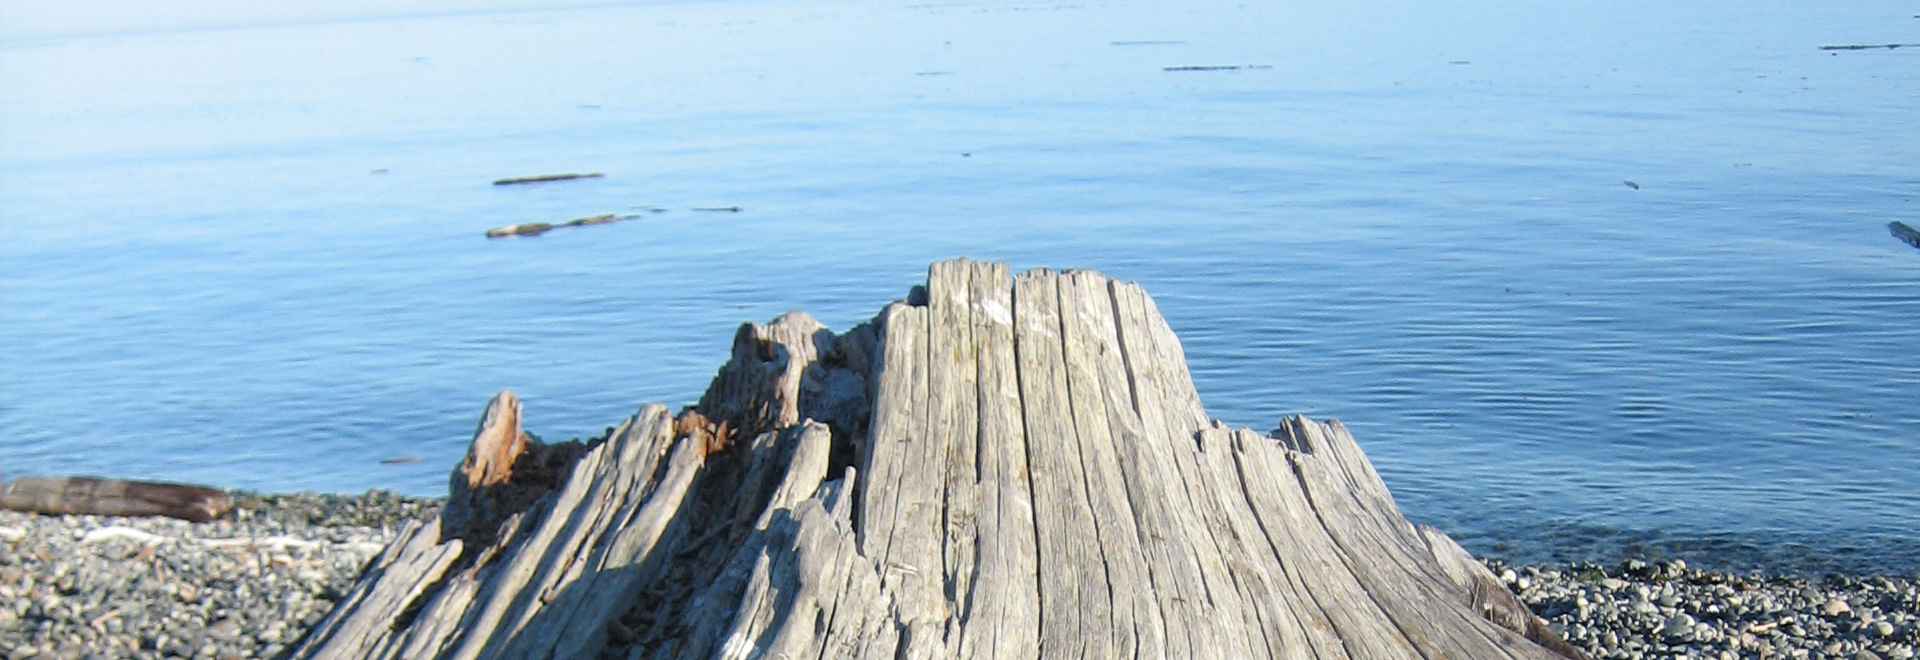 U.S. Tax Victoria - driftwood on the beach